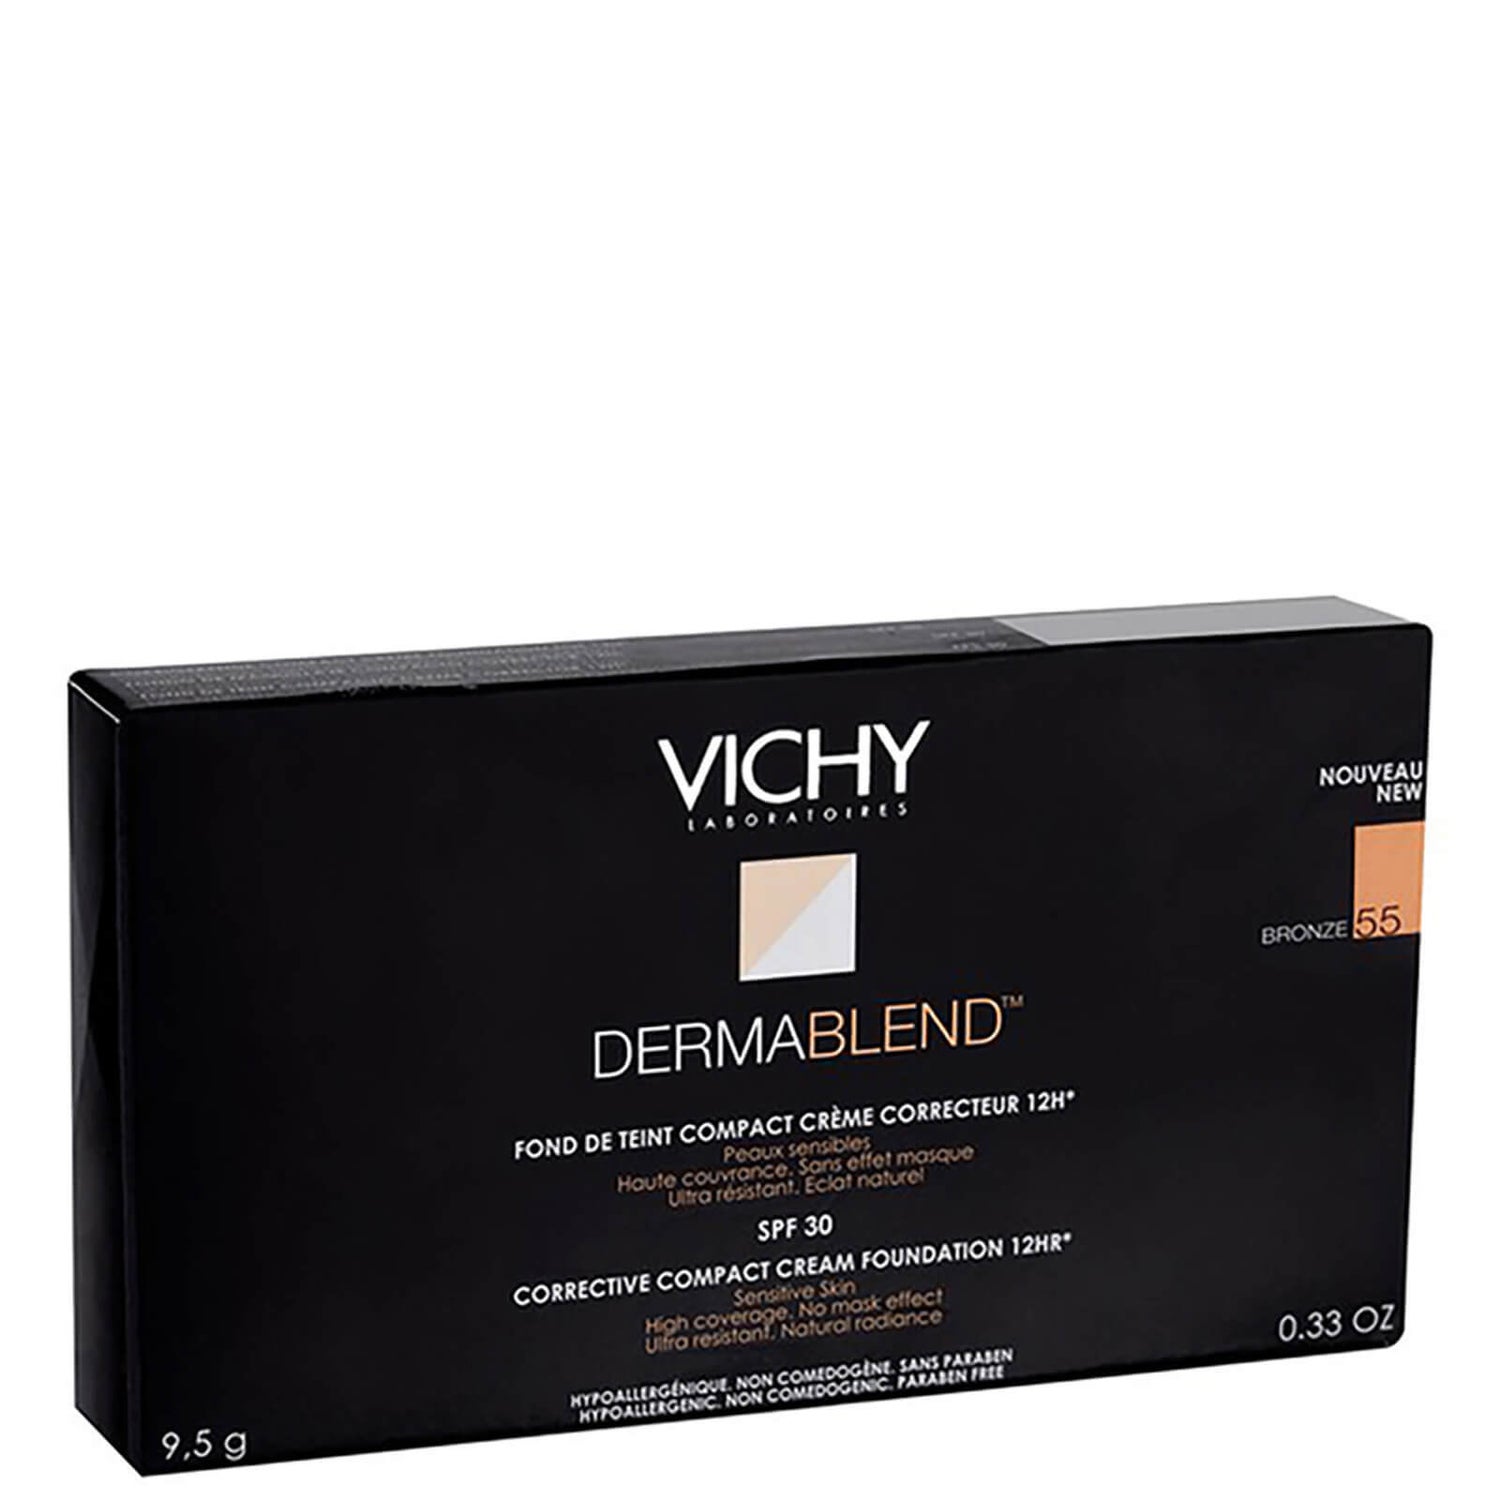 Vichy Dermablend fondotinta correttore compatto in crema (10 g) (diverse tonalità)